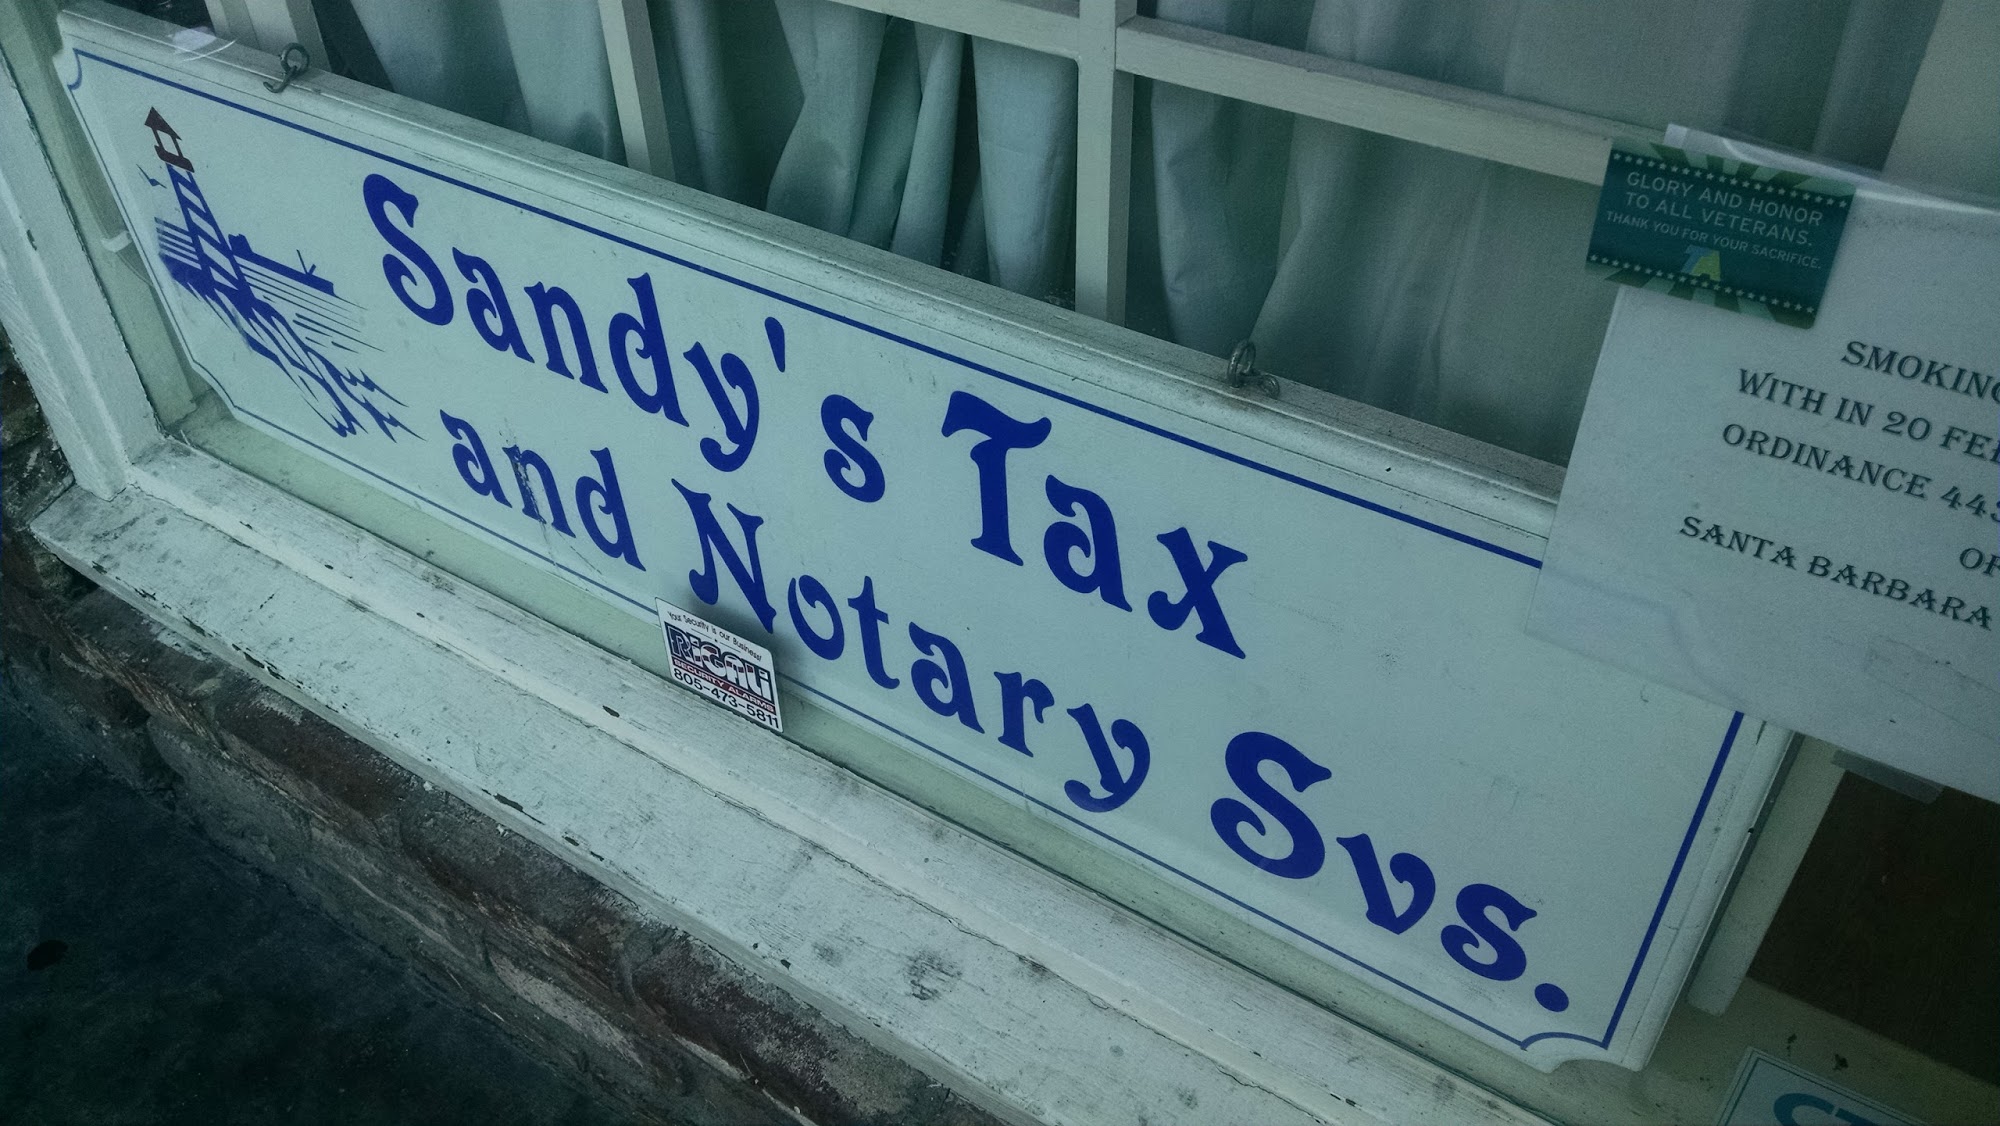 Sandy's Tax & Translation Services